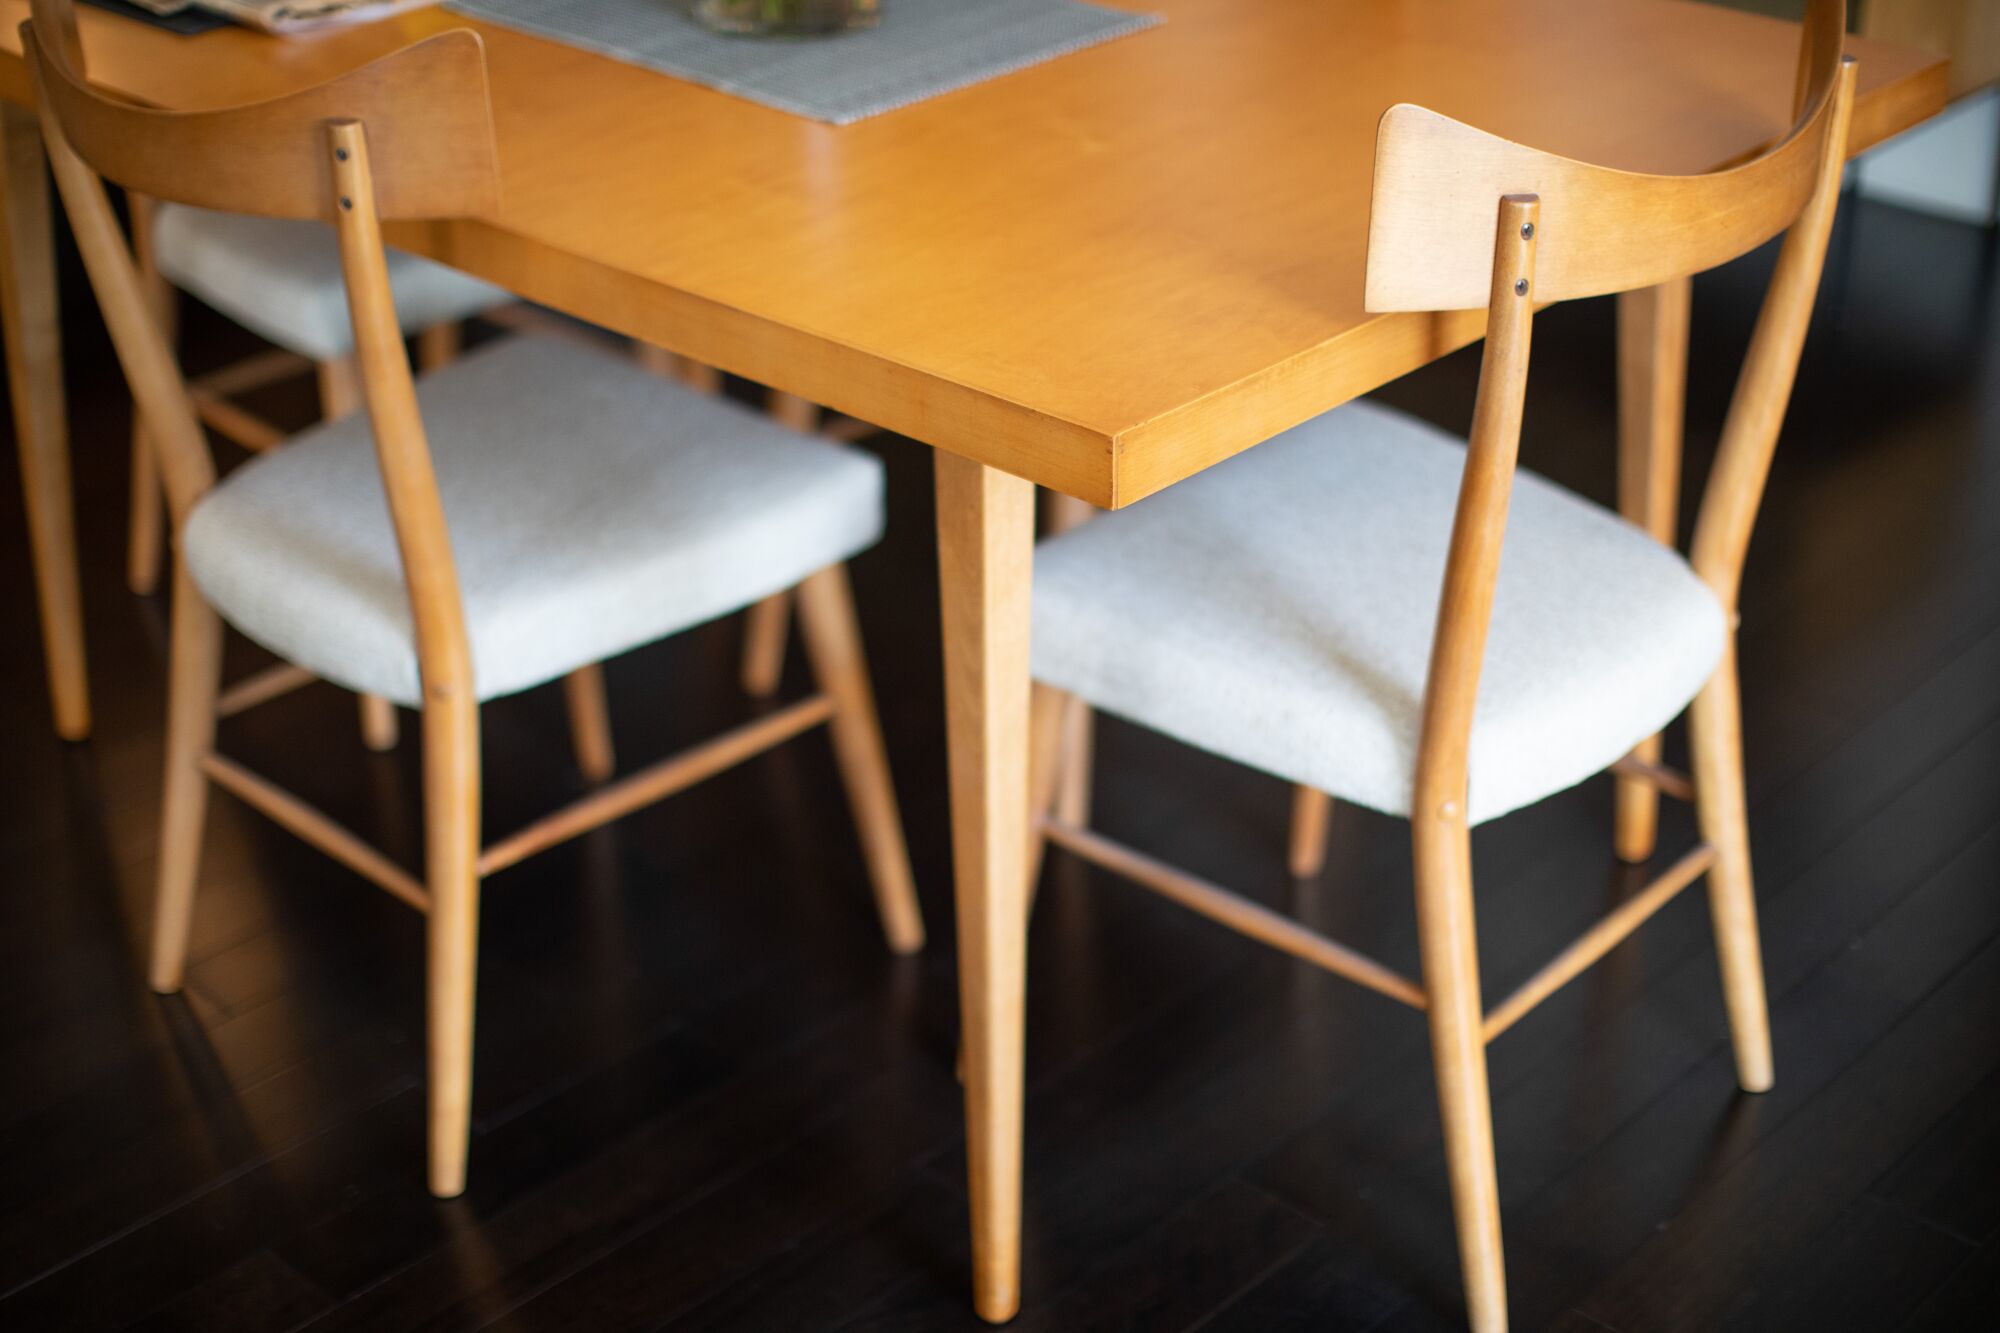 تكشف الصورة الملتقطة بزاوية عن زاوية من طاولة طعام خشبية وكراسي طعام منحنية خلفية بأسلوب الحداثة